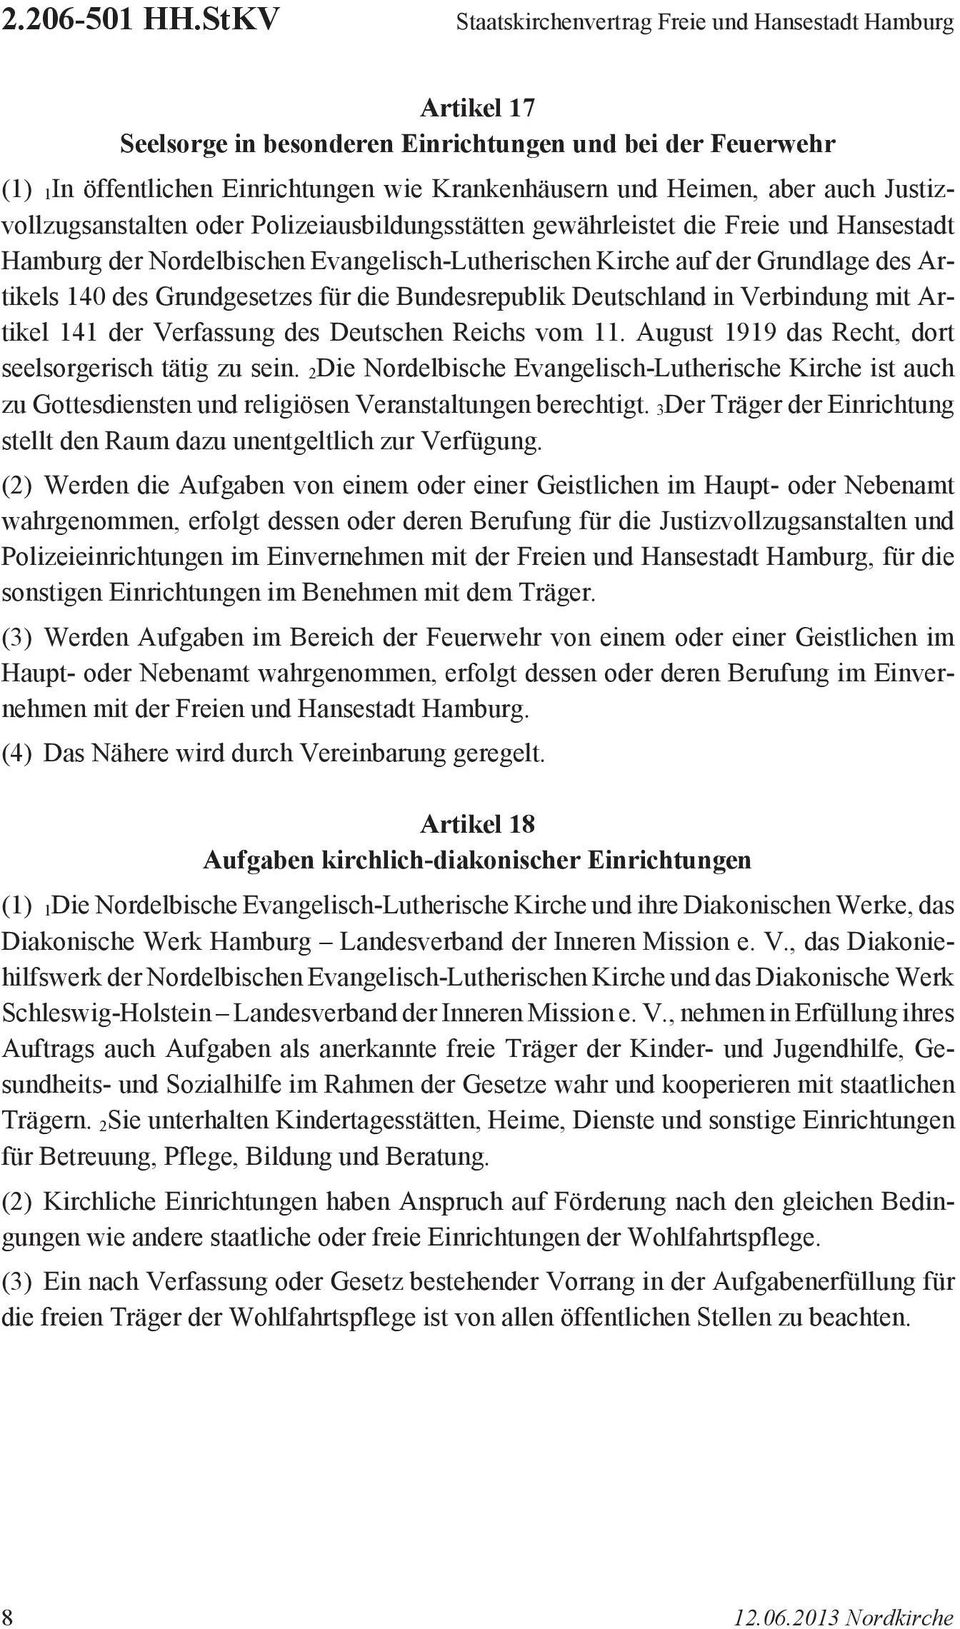 auch Justizvollzugsanstalten oder Polizeiausbildungsstätten gewährleistet die Freie und Hansestadt Hamburg der Nordelbischen Evangelisch-Lutherischen Kirche auf der Grundlage des Artikels 140 des